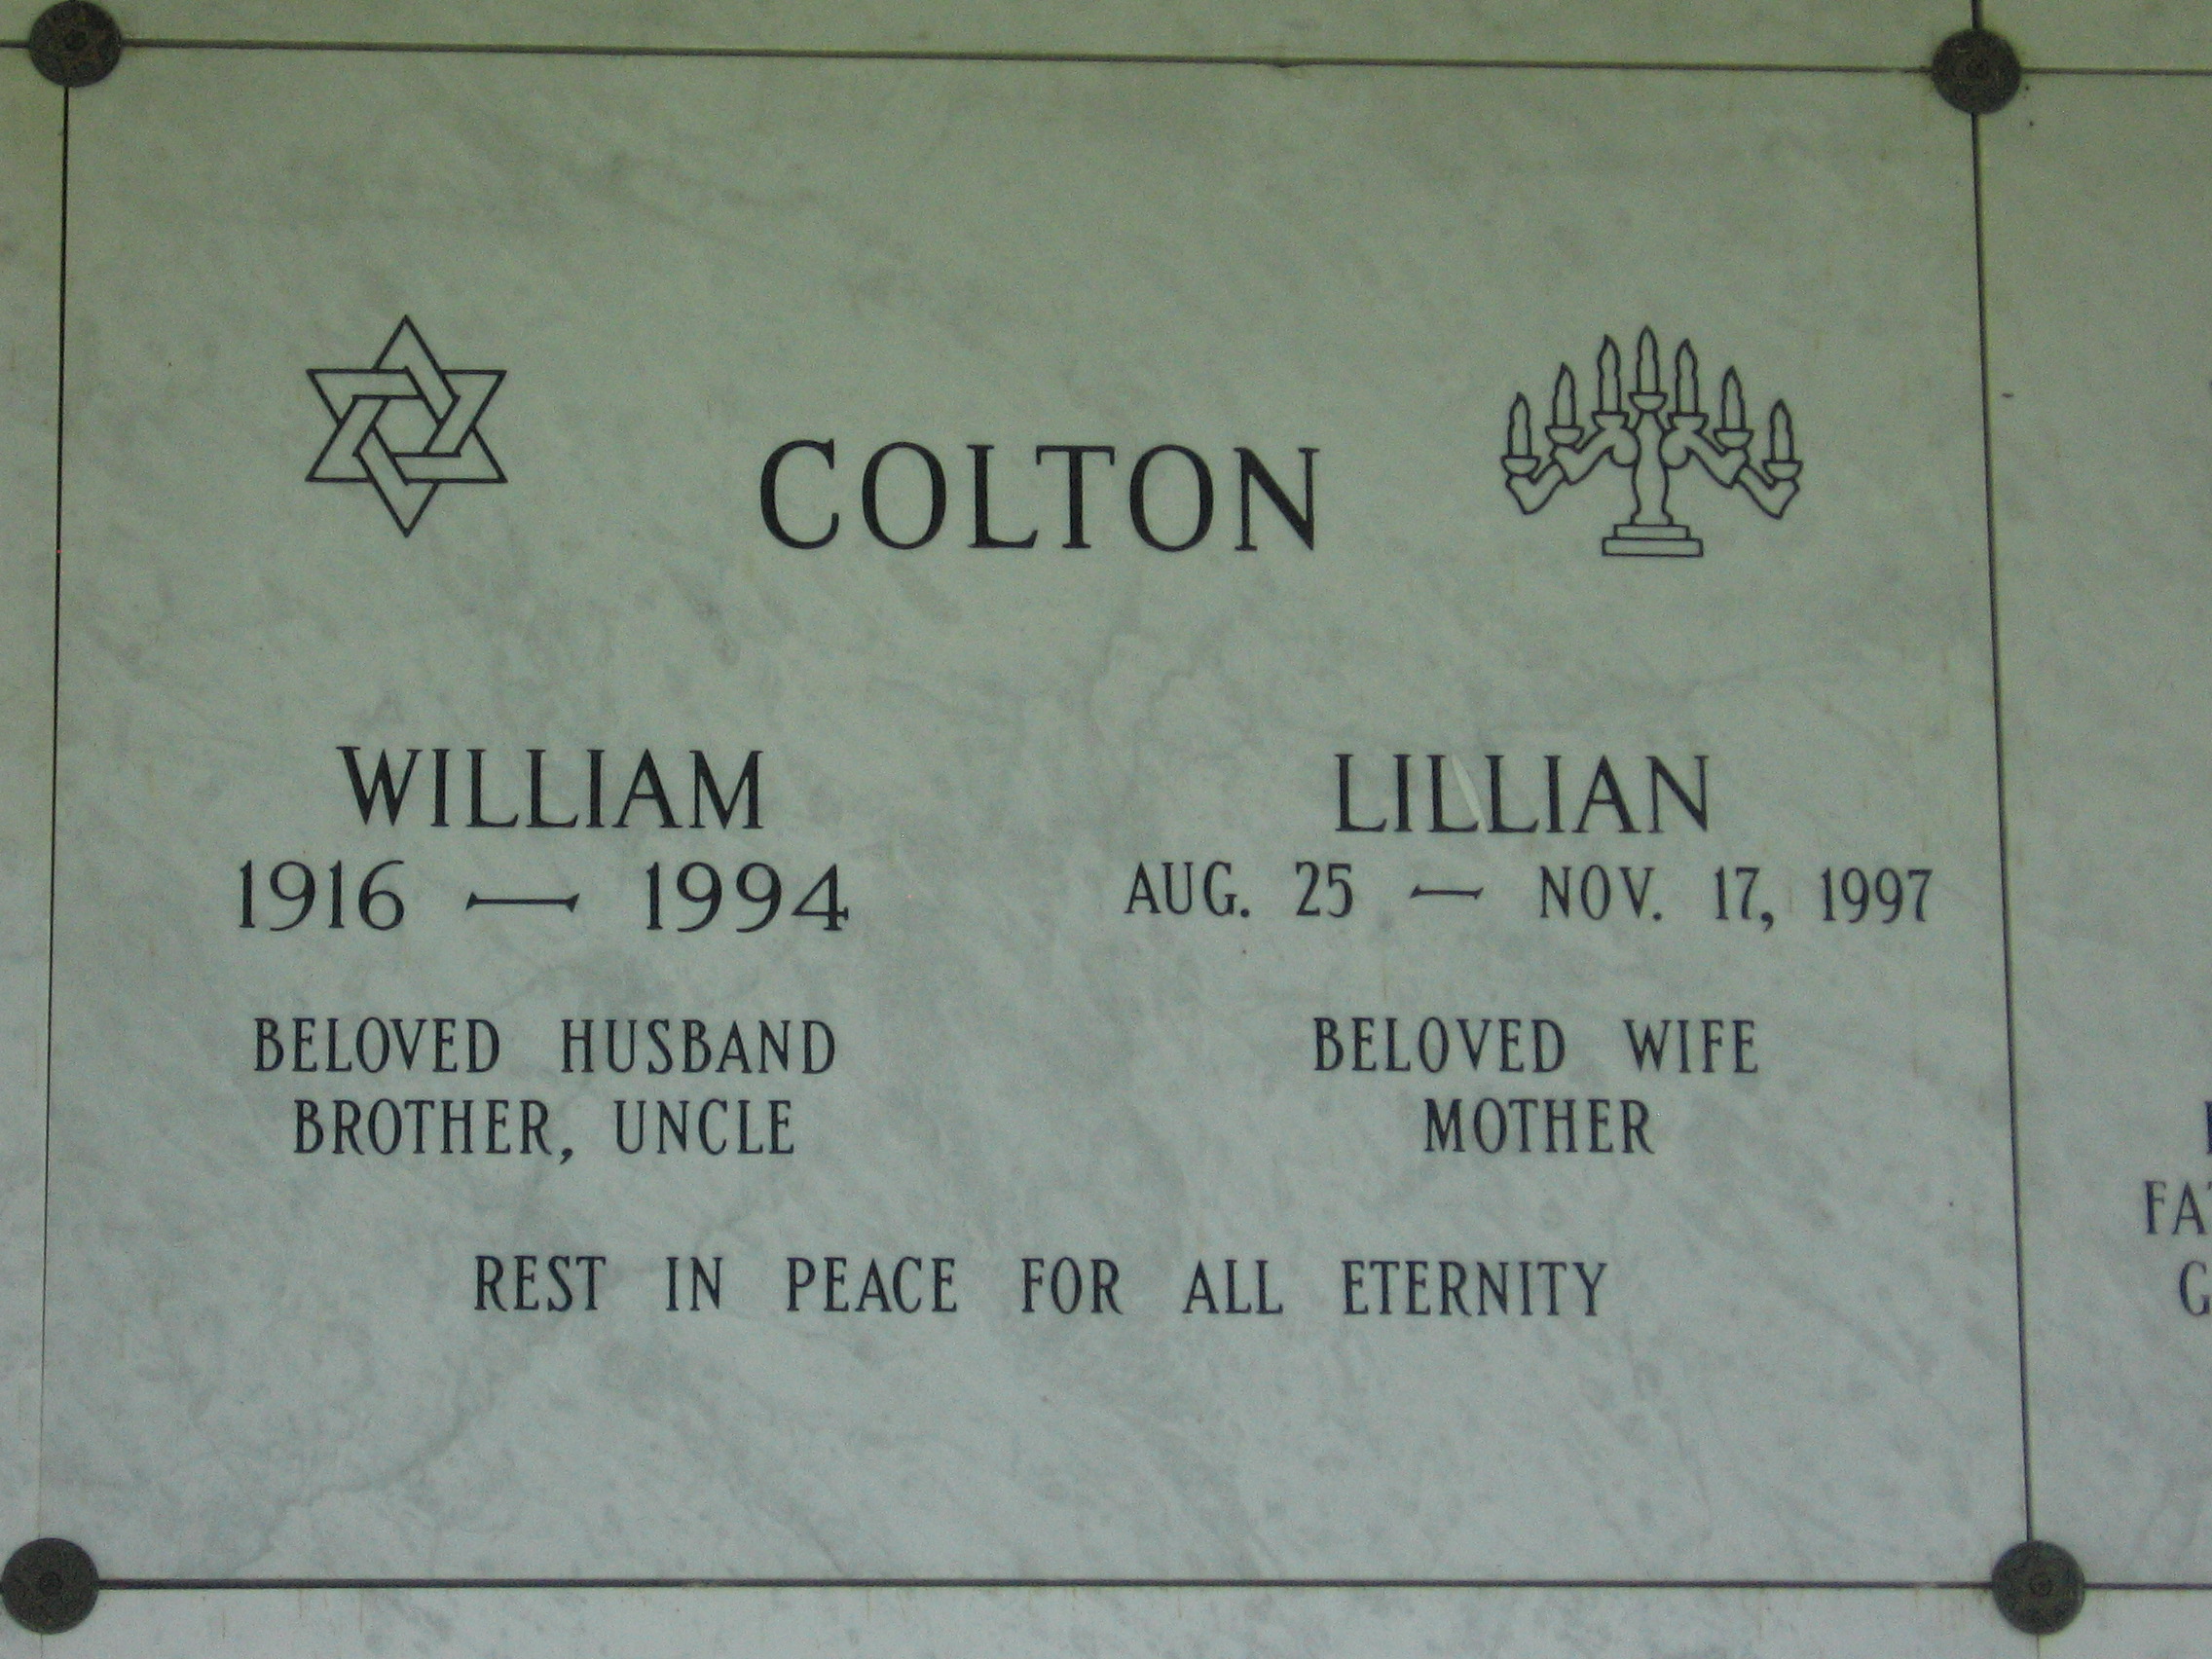 William Colton